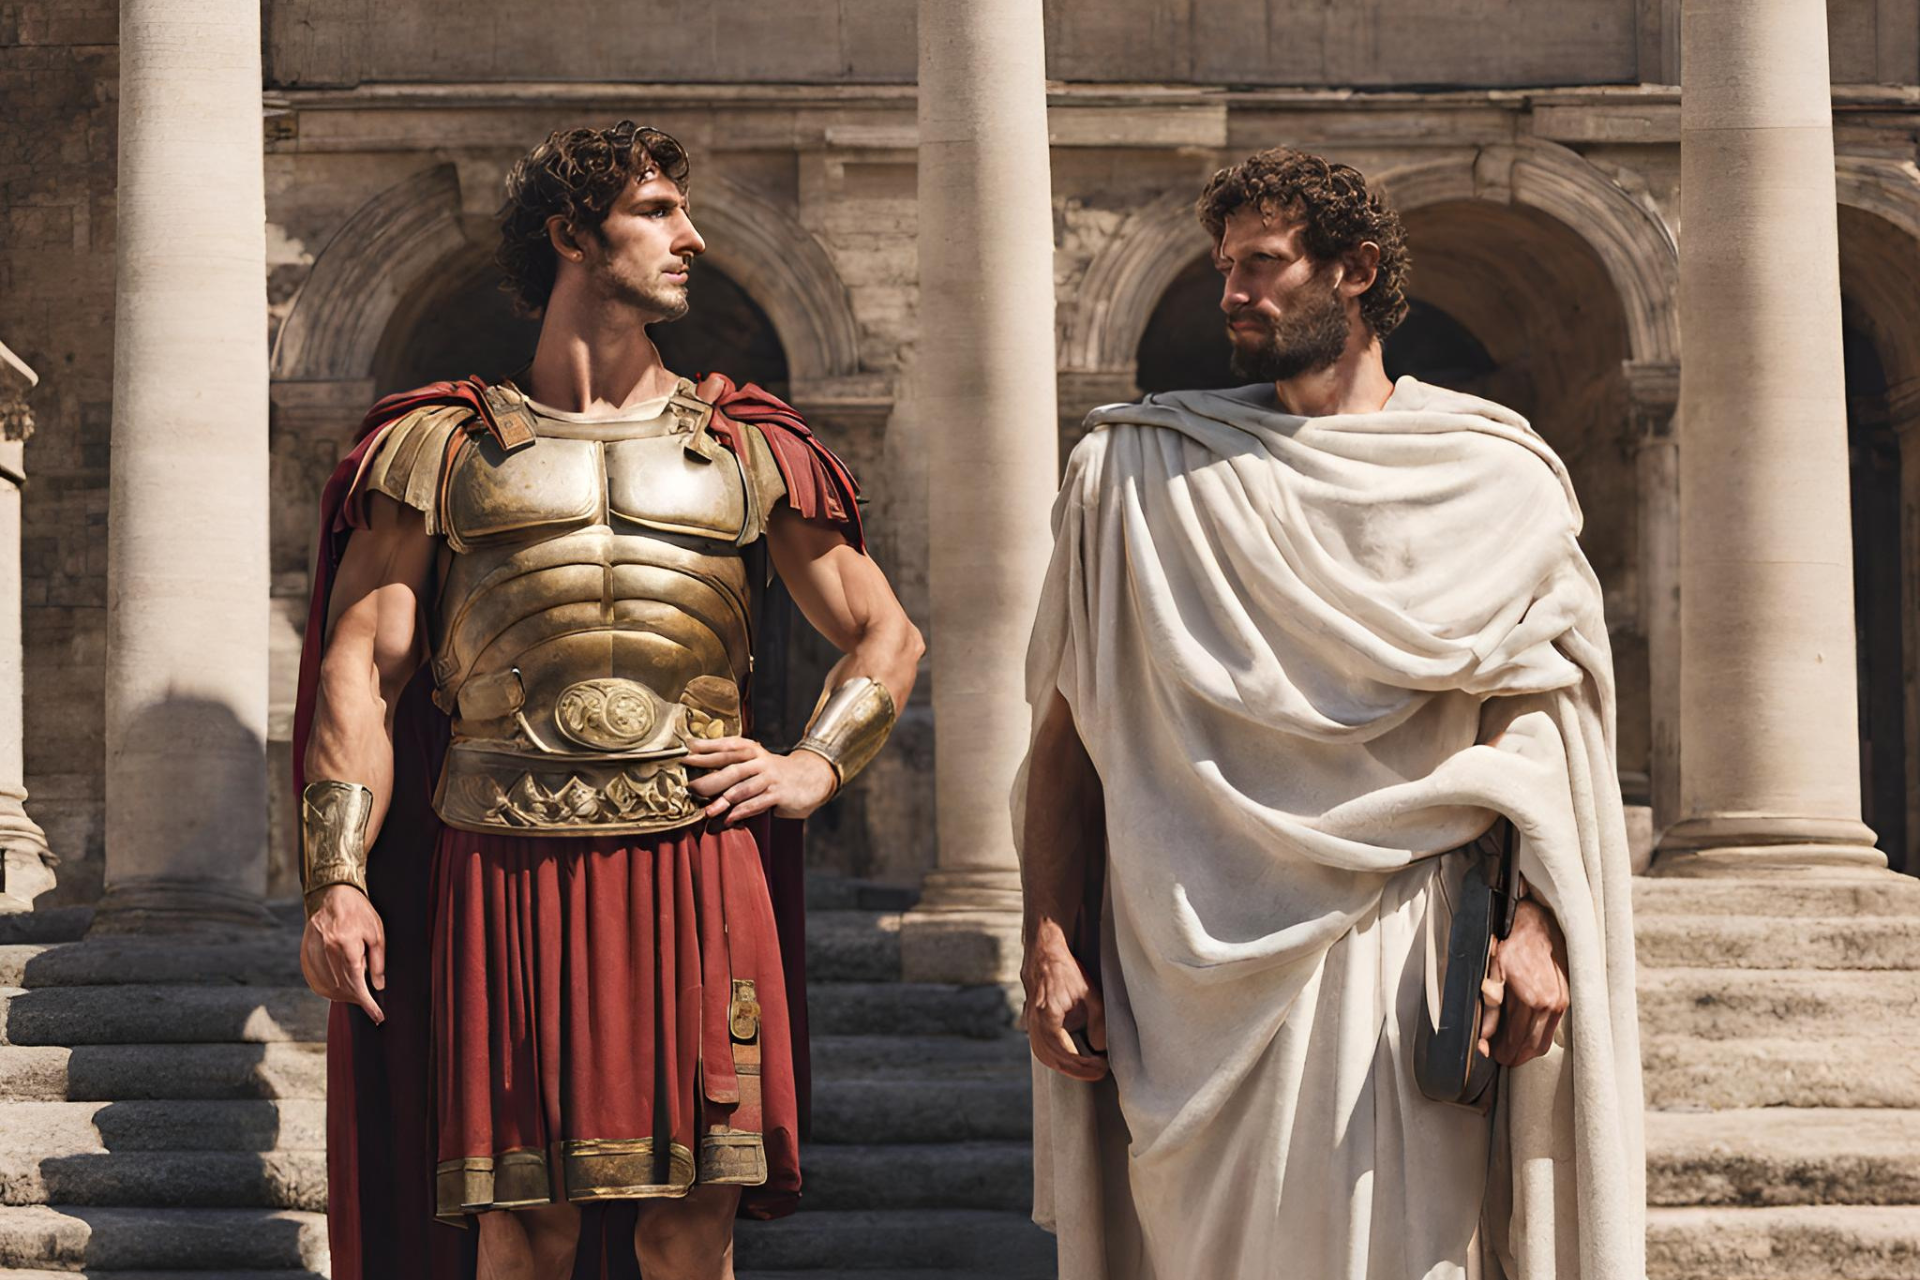 Römer und Grieche in der Antiken Gesundheit